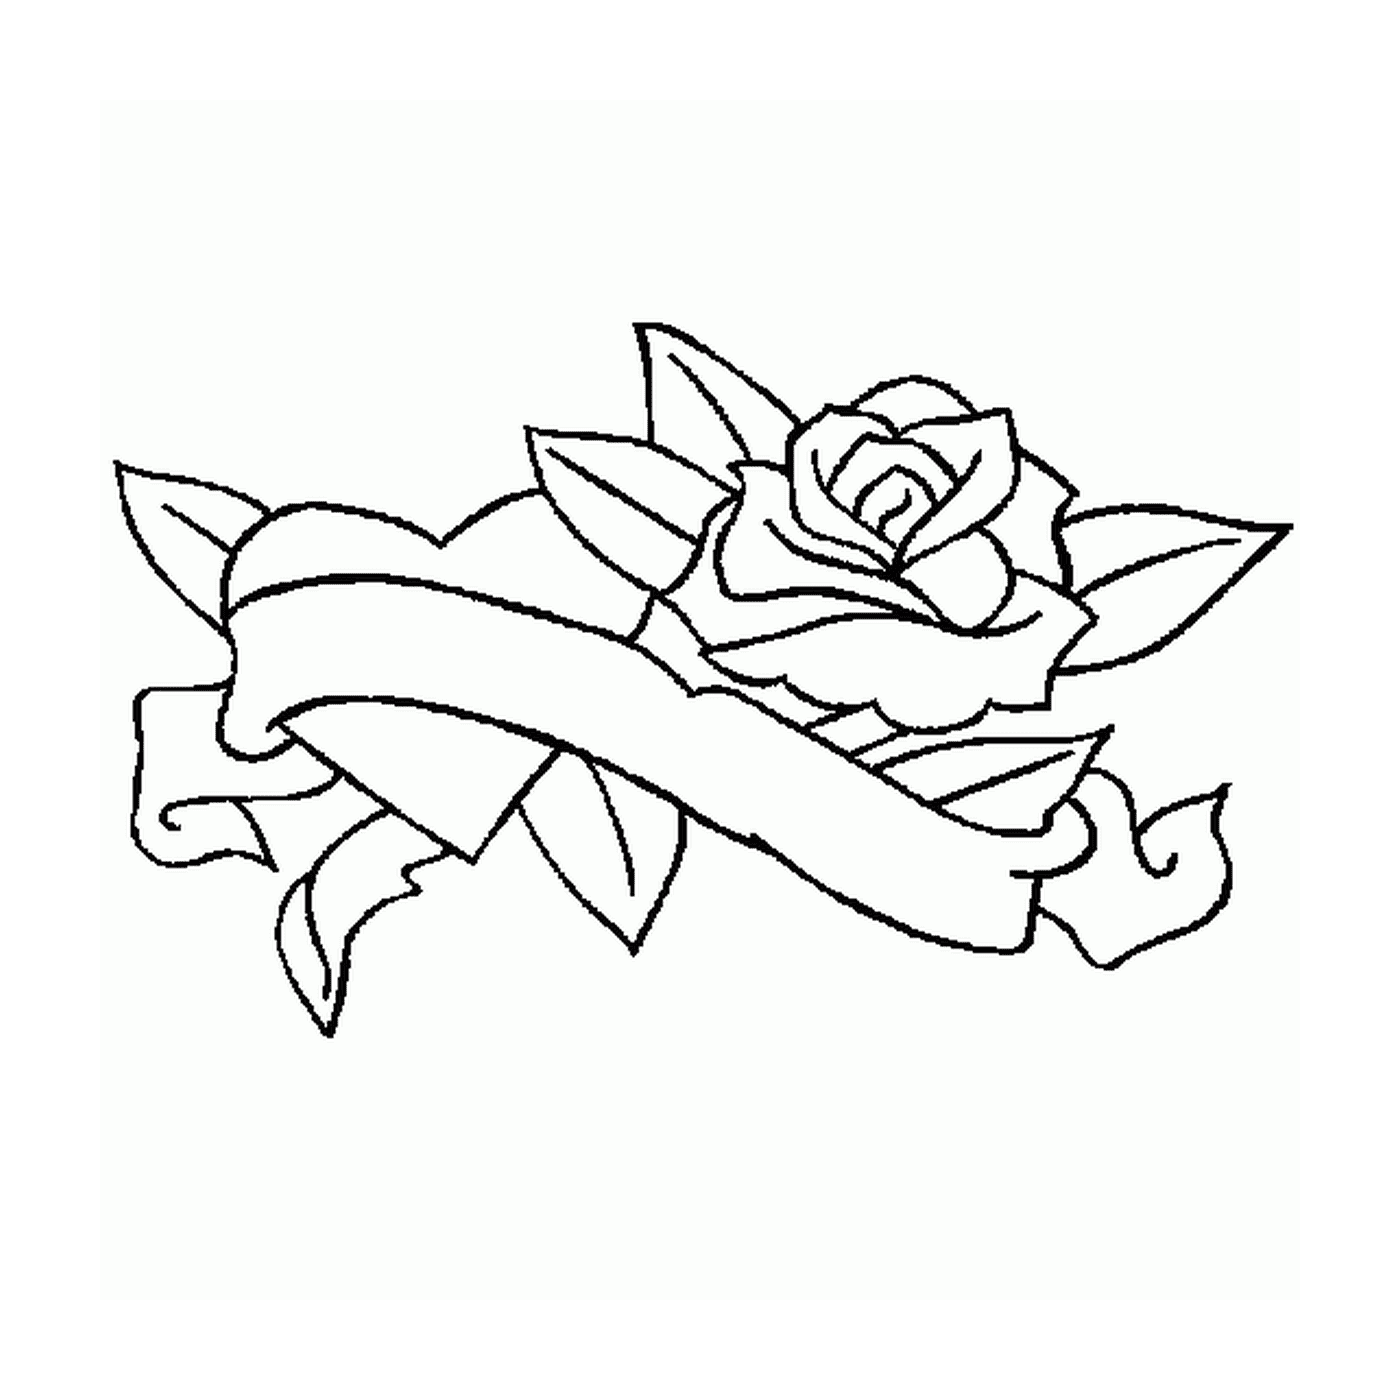  Rosa con bandera romántica 